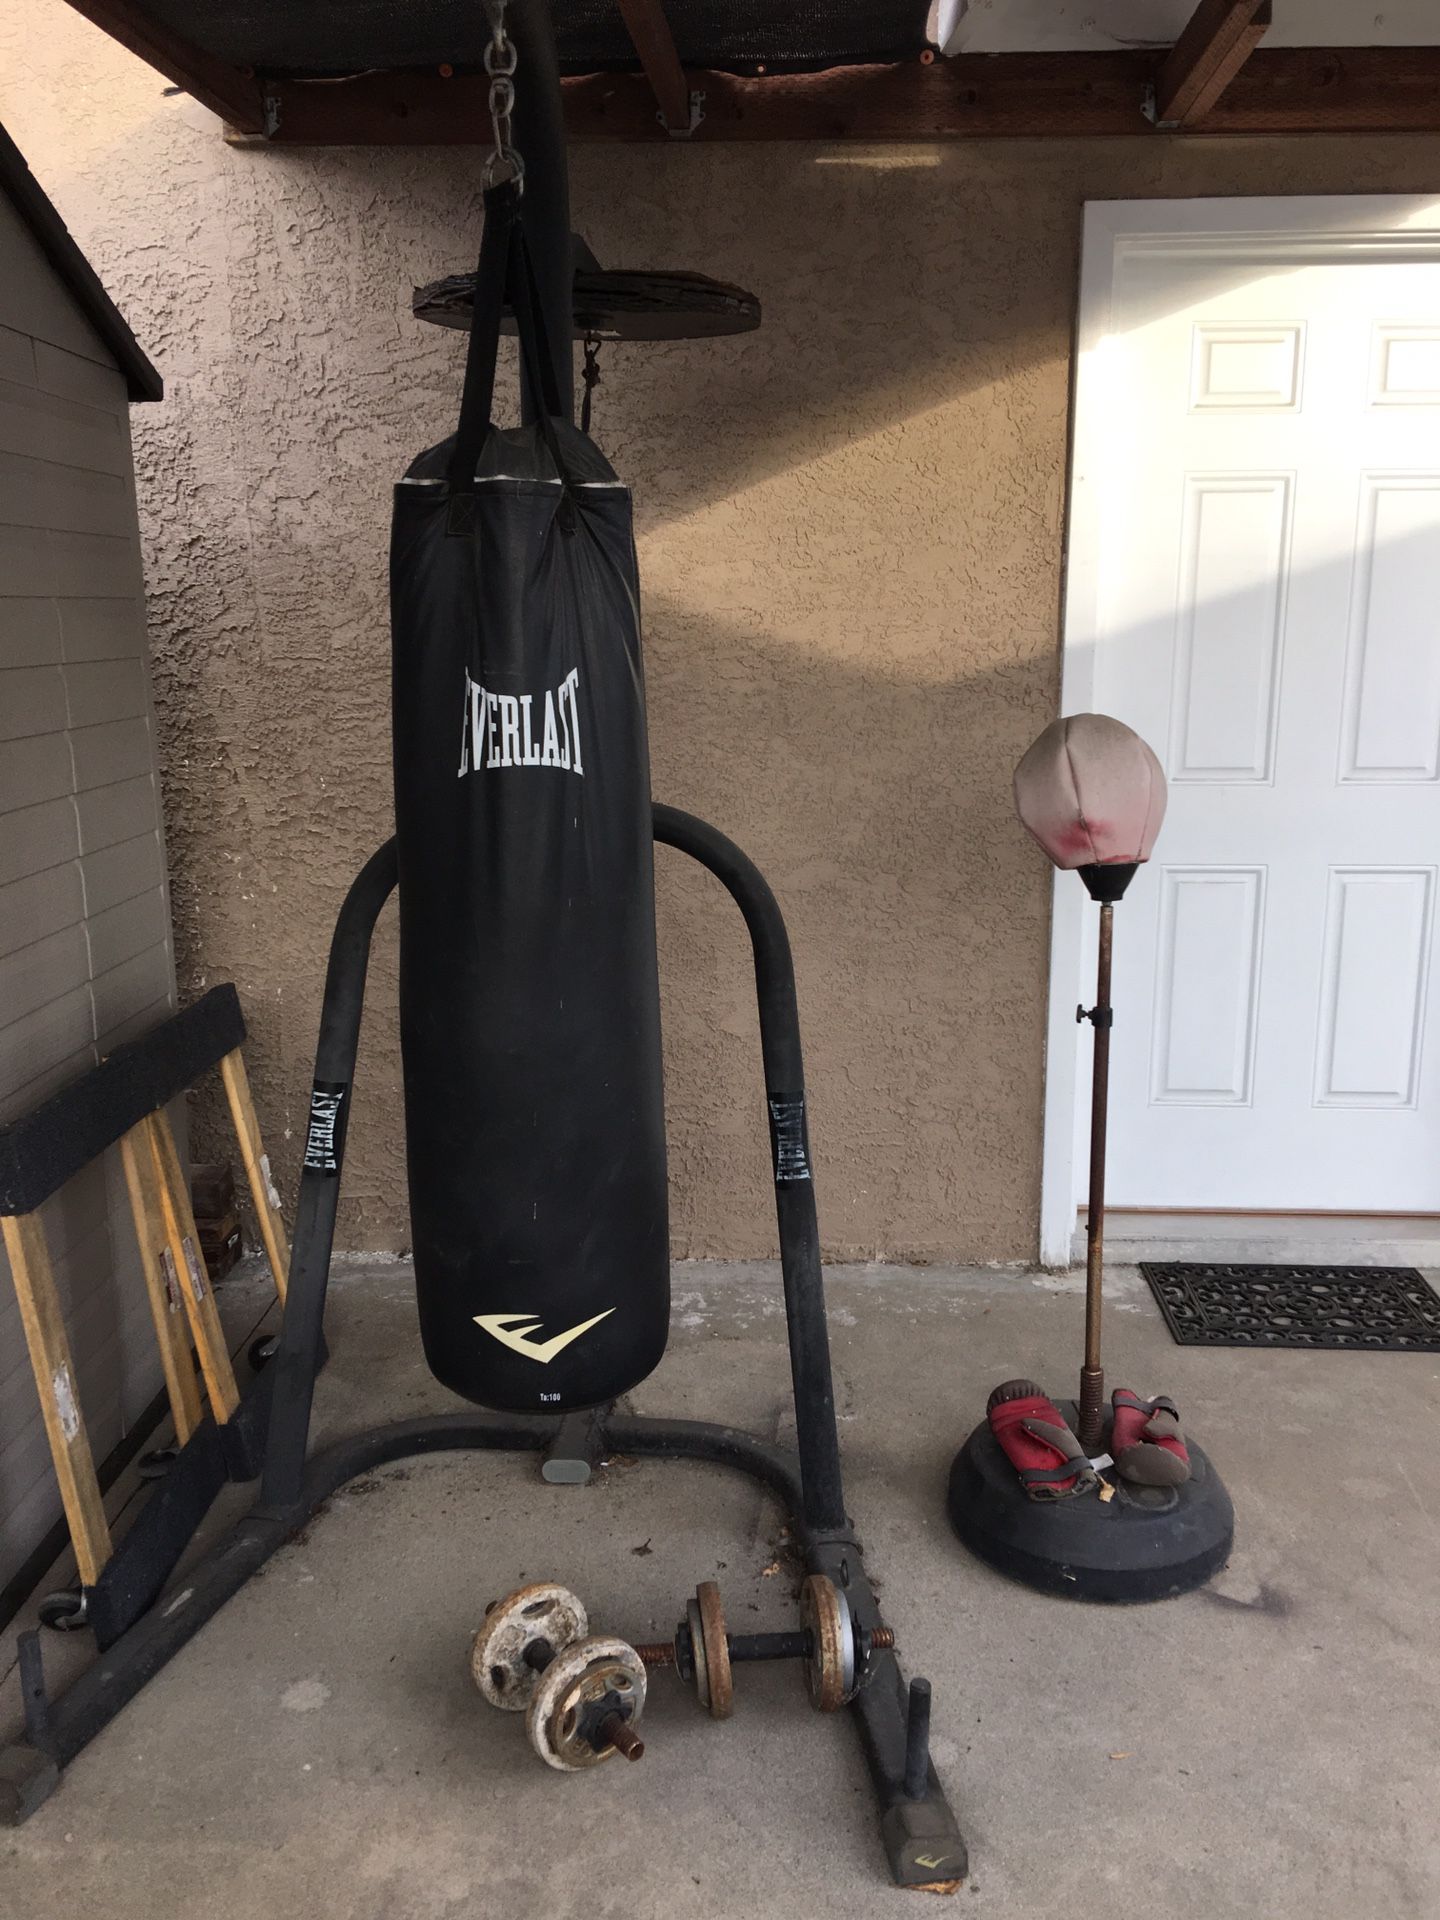 Boxing equipment set